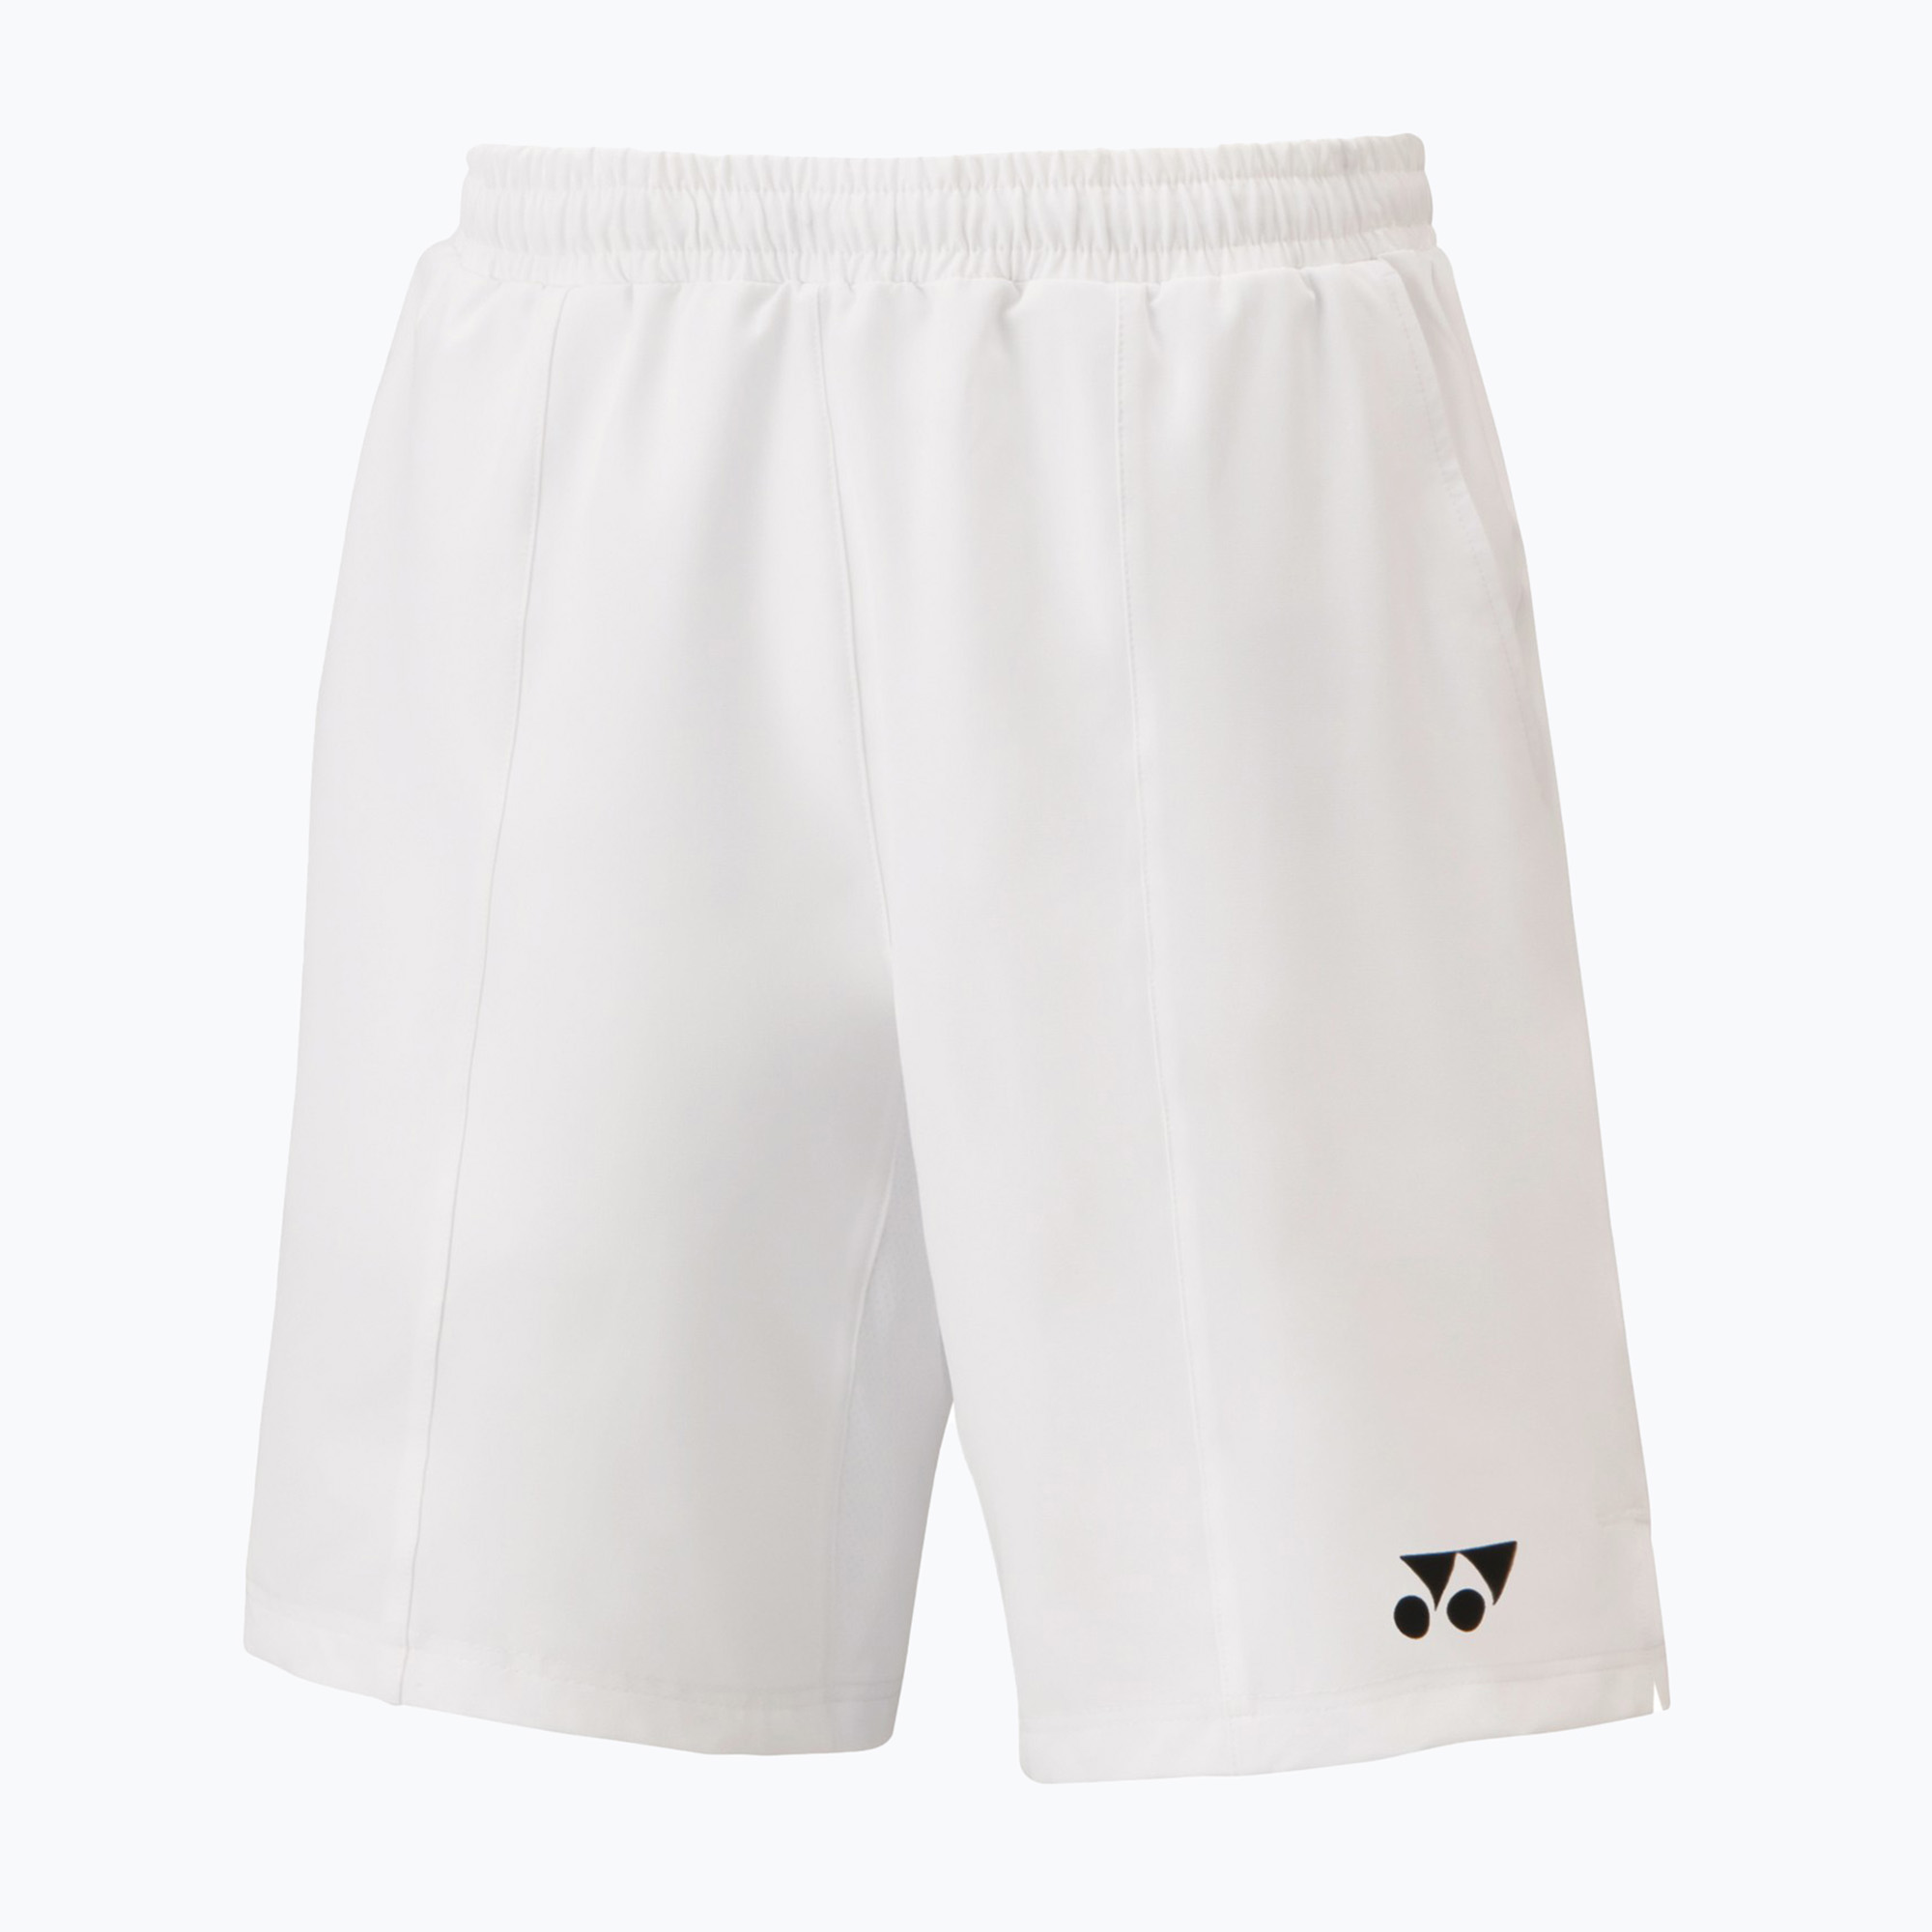 Мъжки тенис шорти YONEX, бели CSM151343W